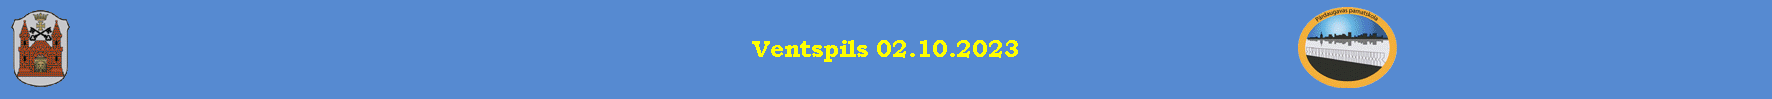 Ventspils 02.10.2023